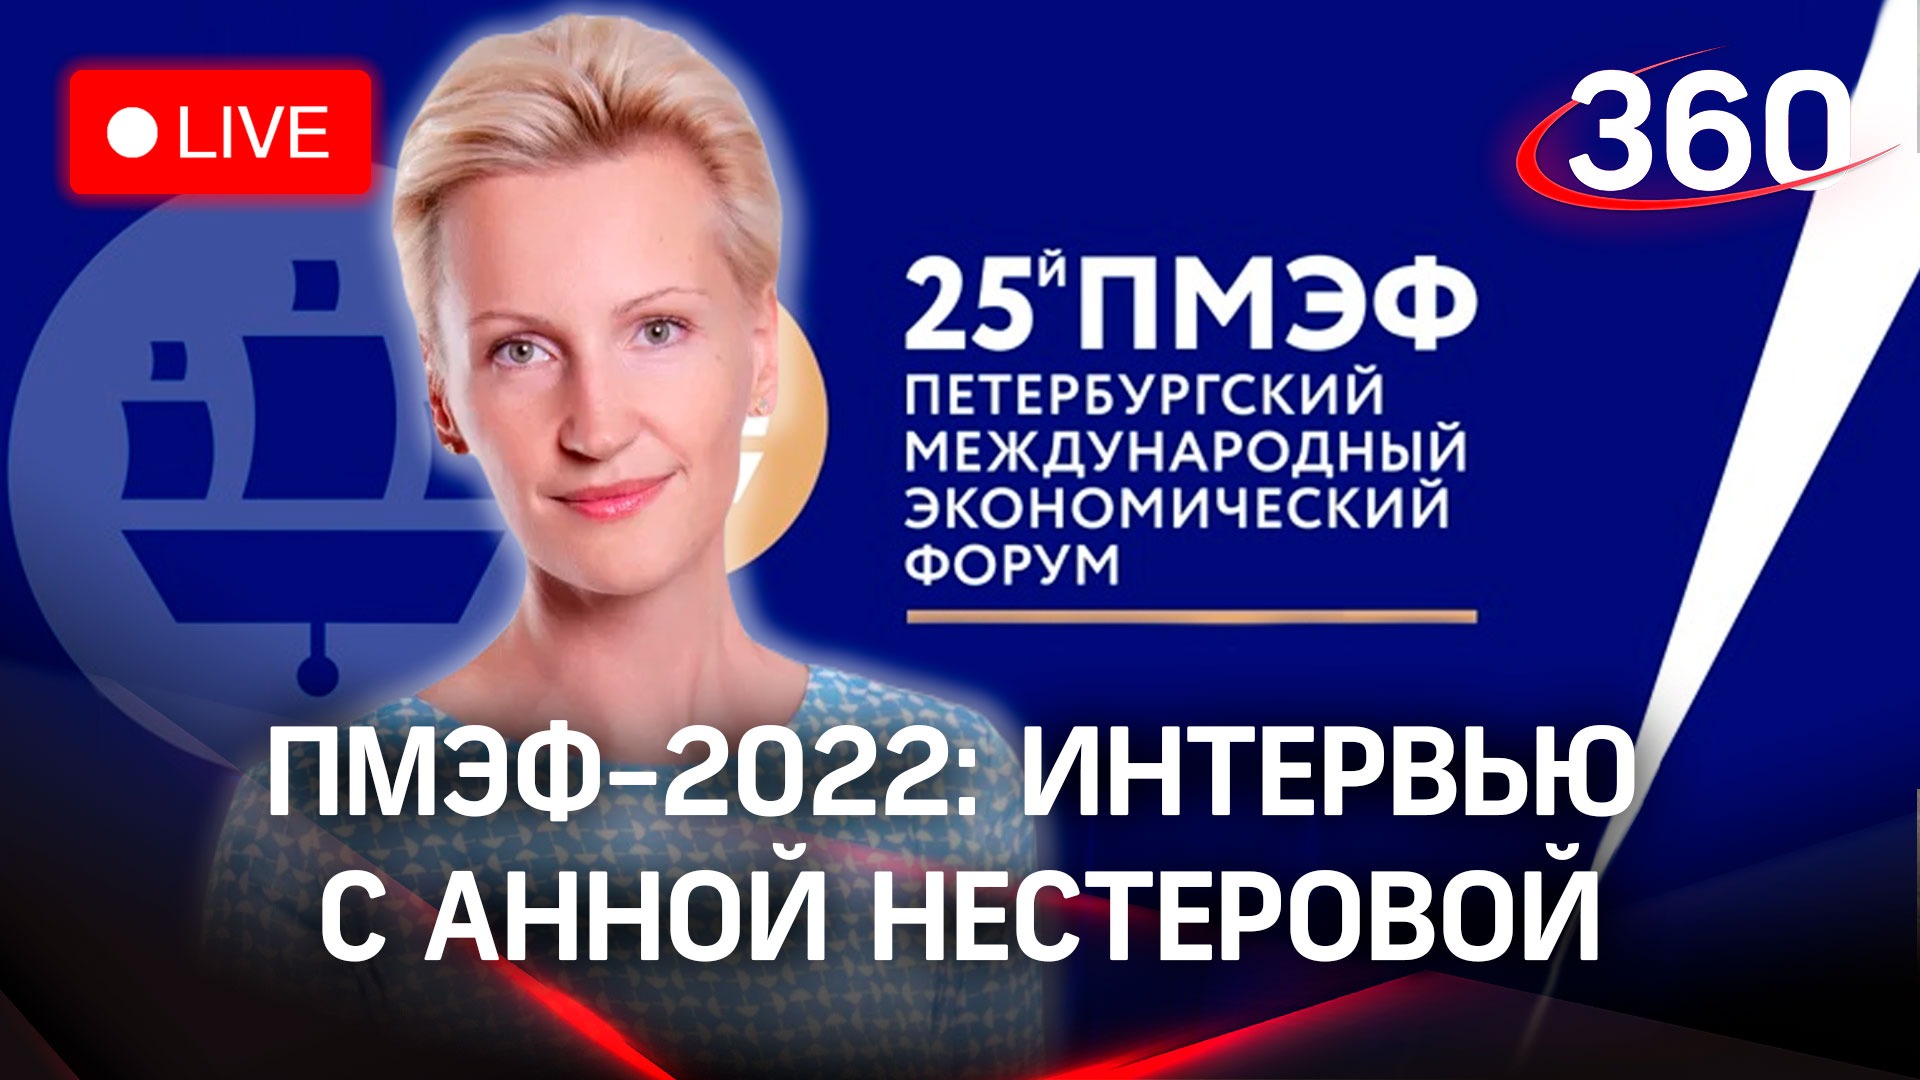 ПМЭФ-2022: интервью с Анной Нестеровой, председателем Женского делового альянса БРИКС